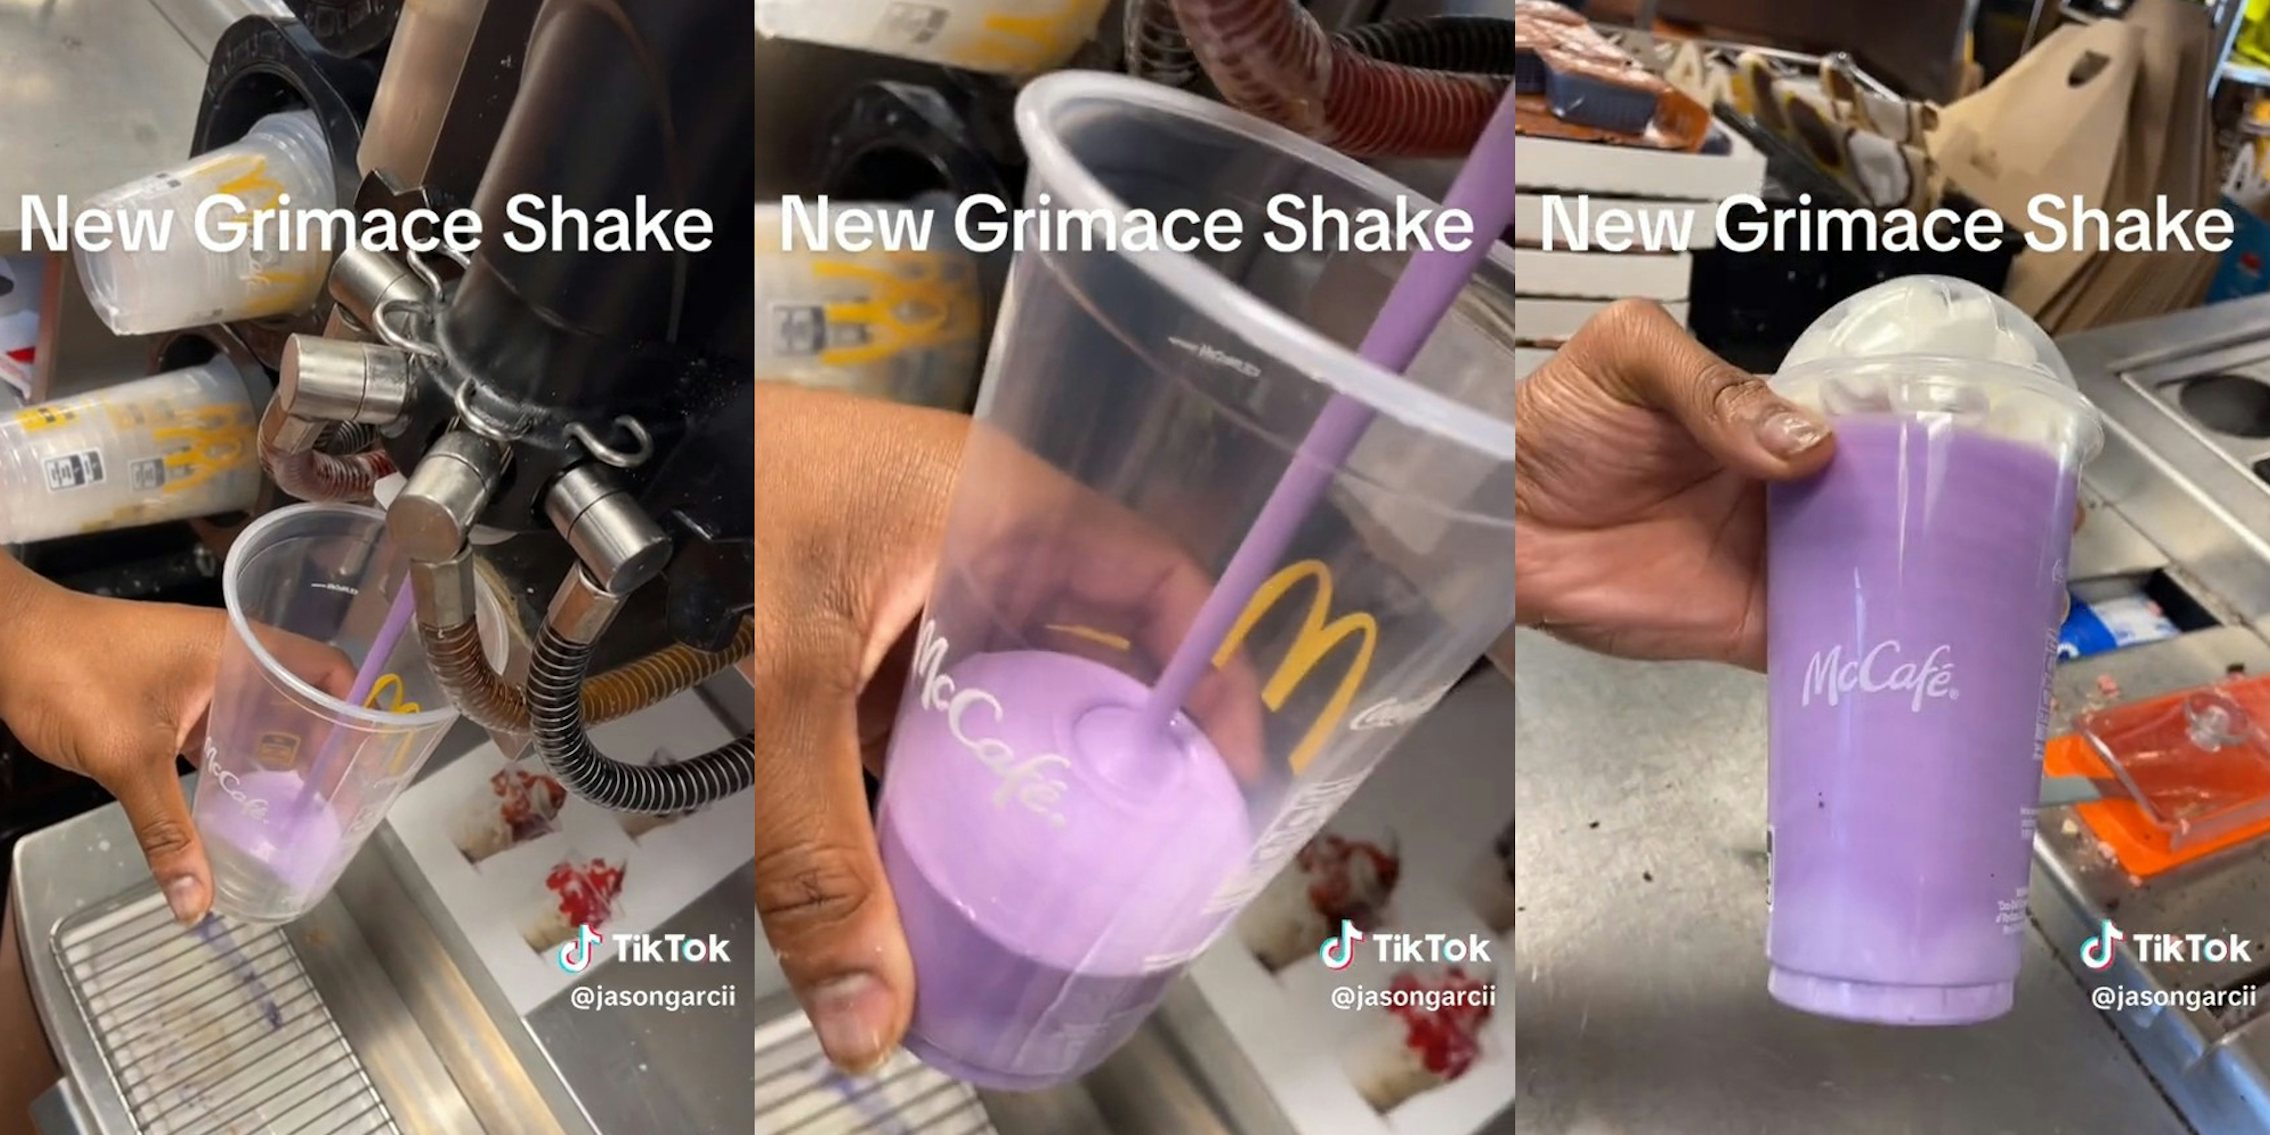 Grimace shake